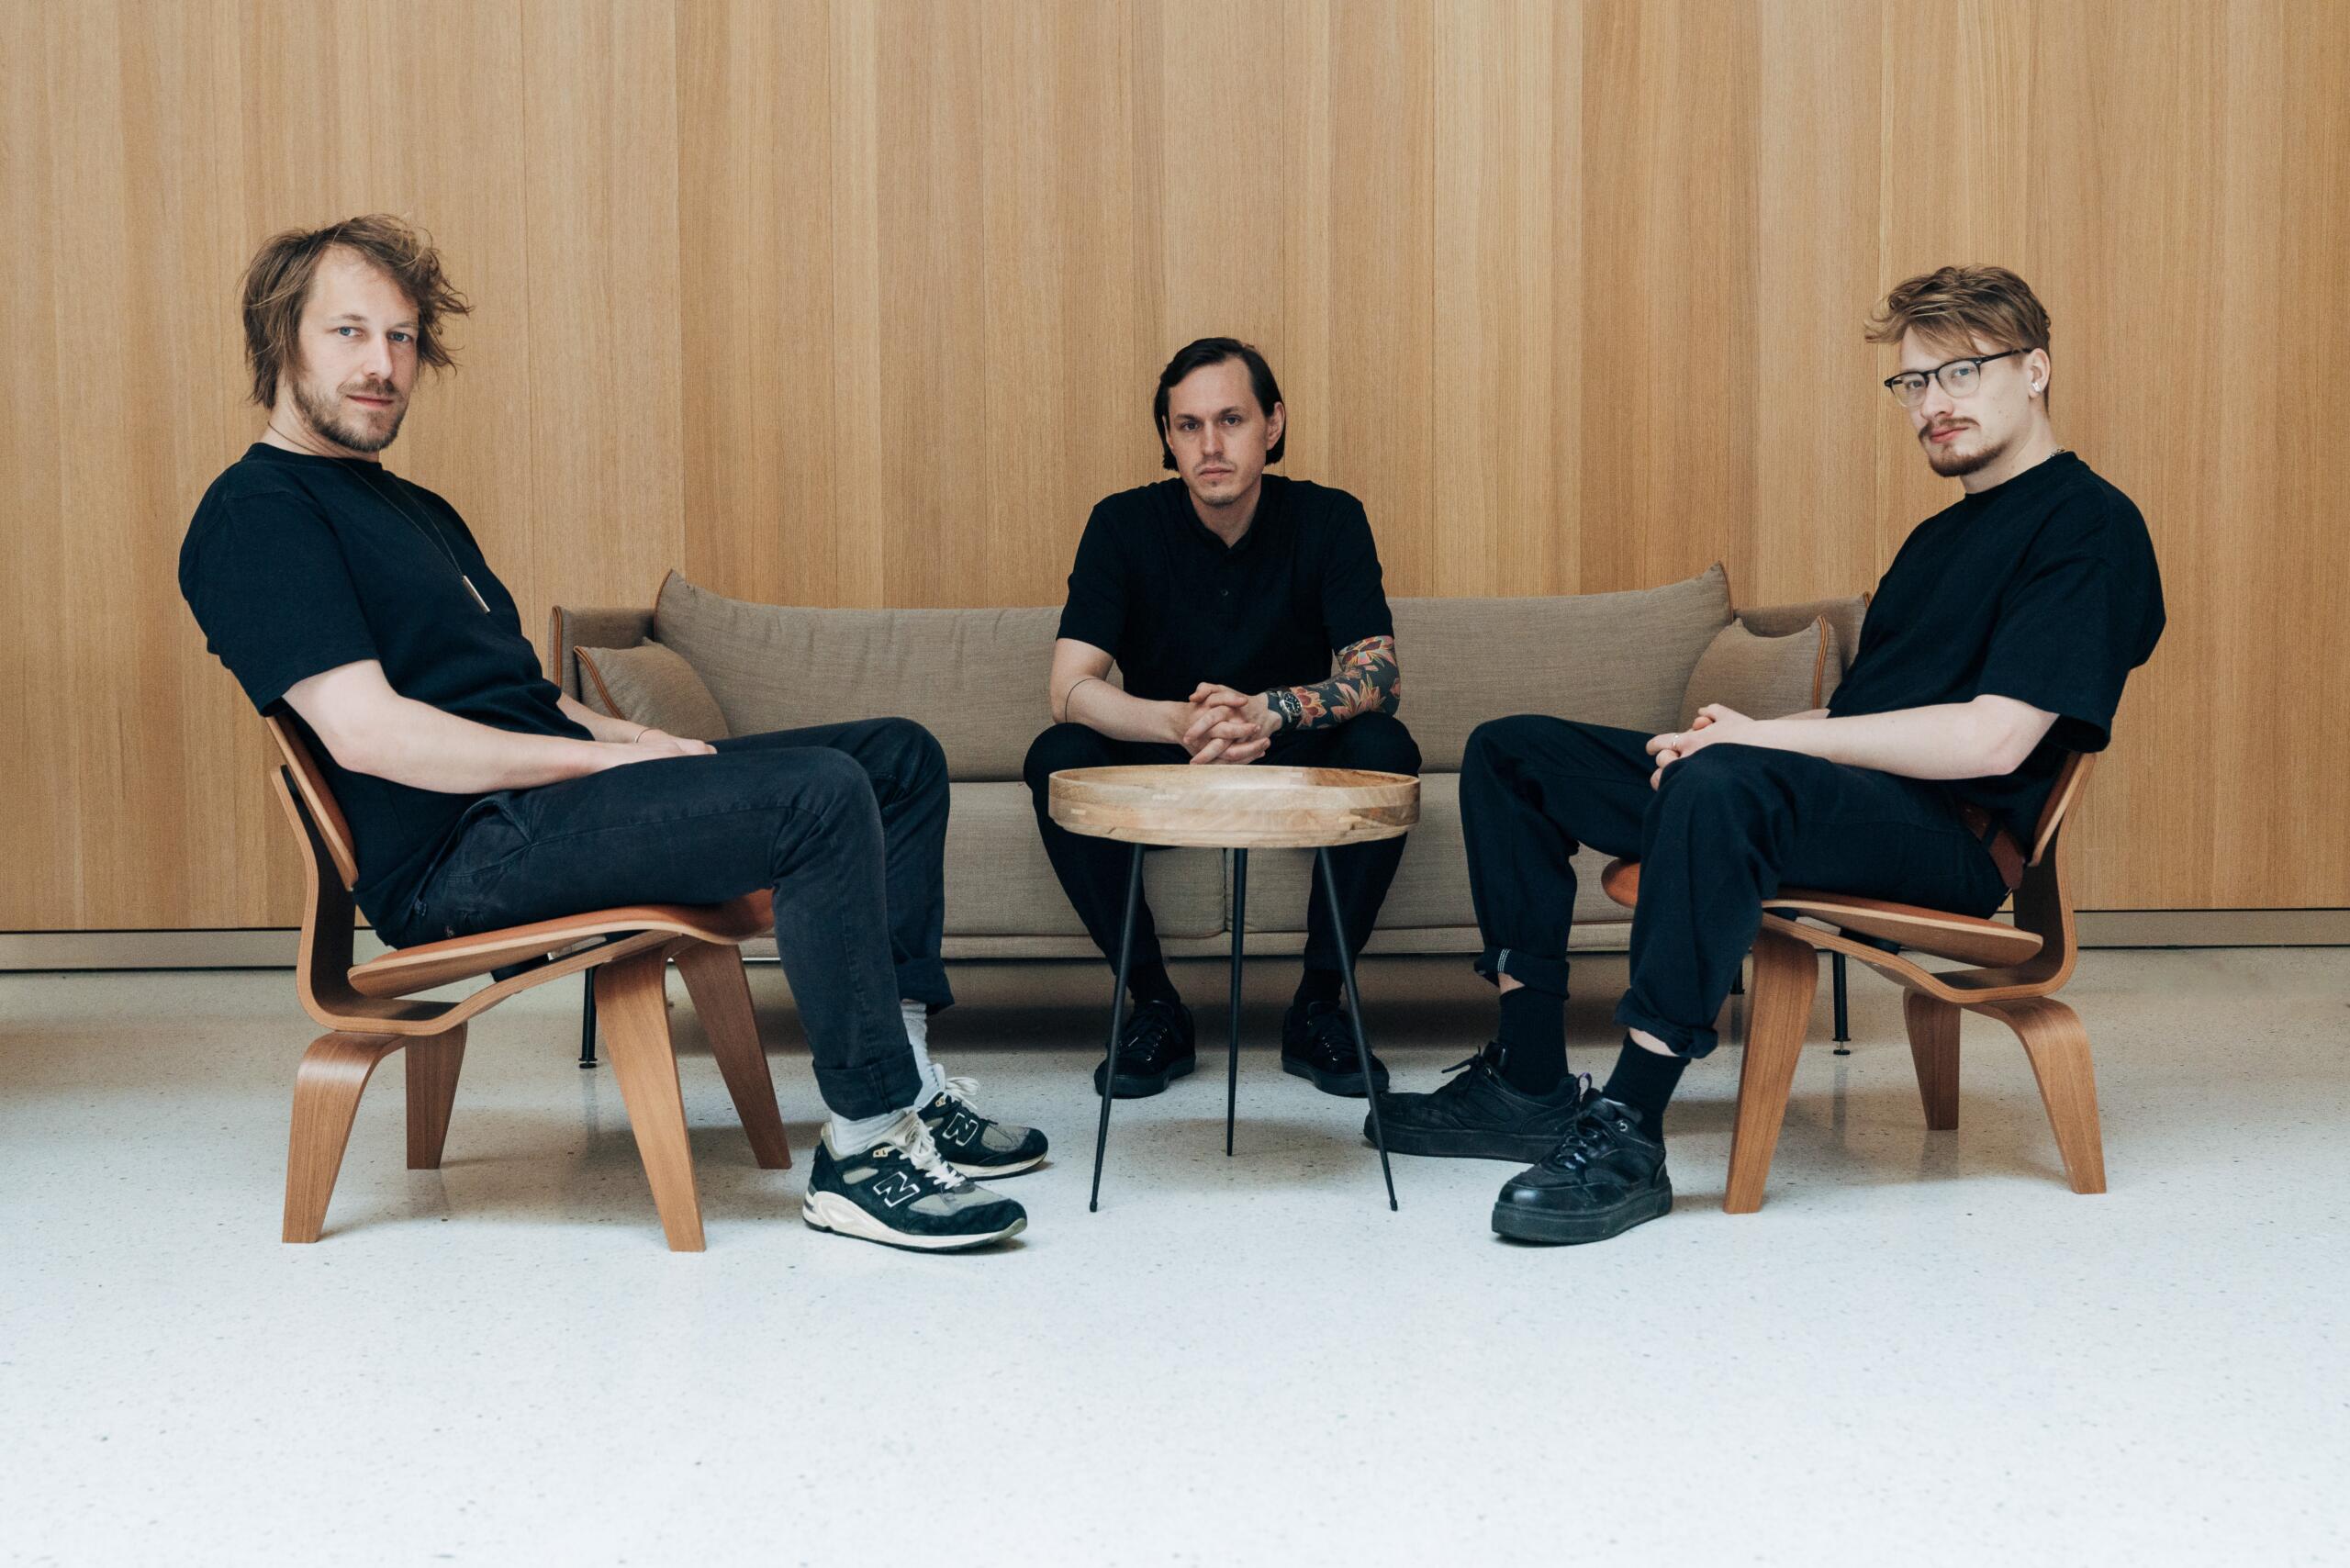 Drei Männer in schwarzer Kleidung sitzen um einen runden Holztisch und schauen in die Kamera. Der Raum ist hell und holzvertäfelt.